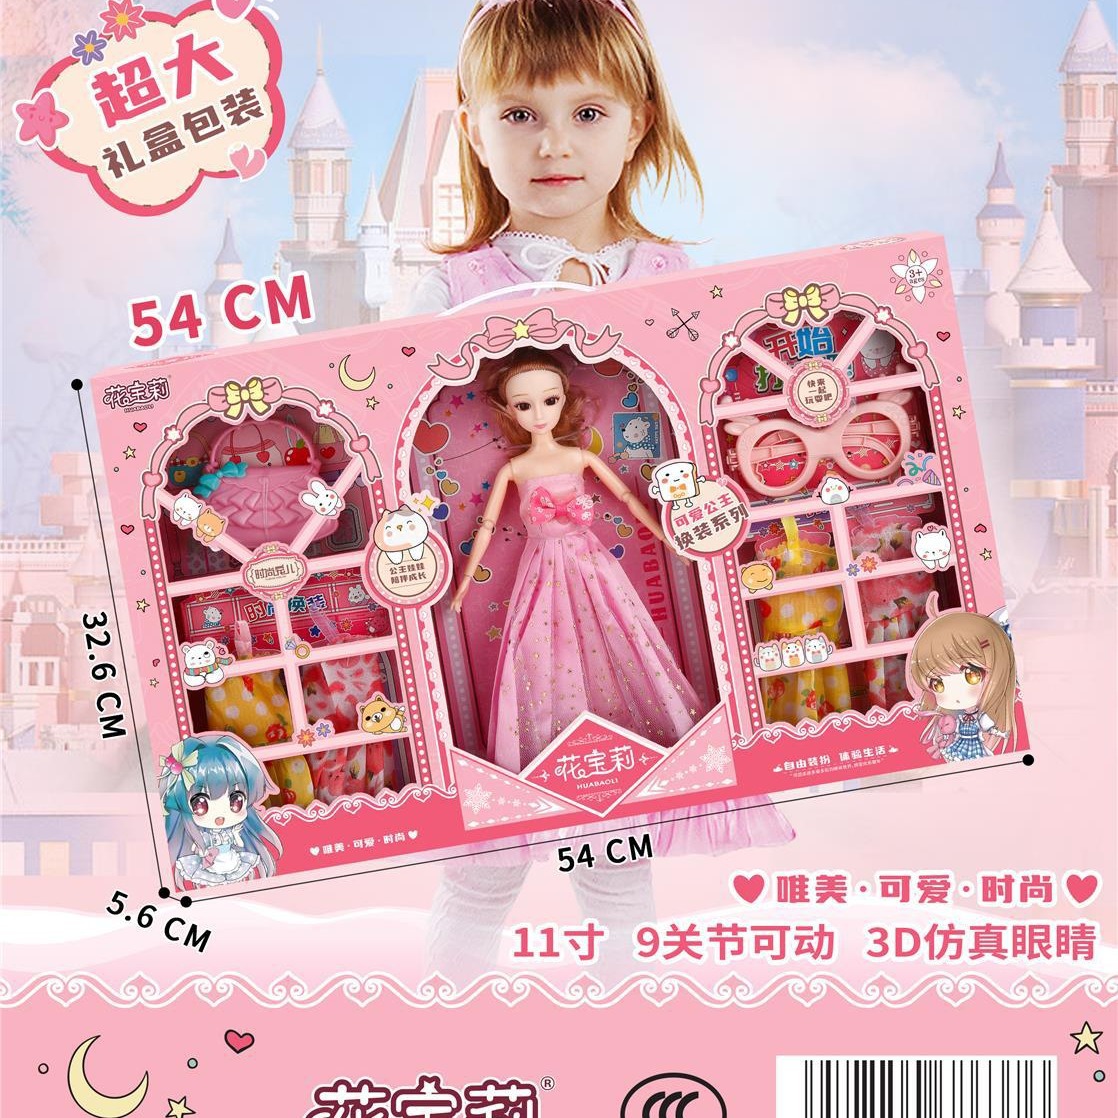 洋娃娃礼盒装大号54厘米女孩公主培训机构儿童玩具礼品2939元模式